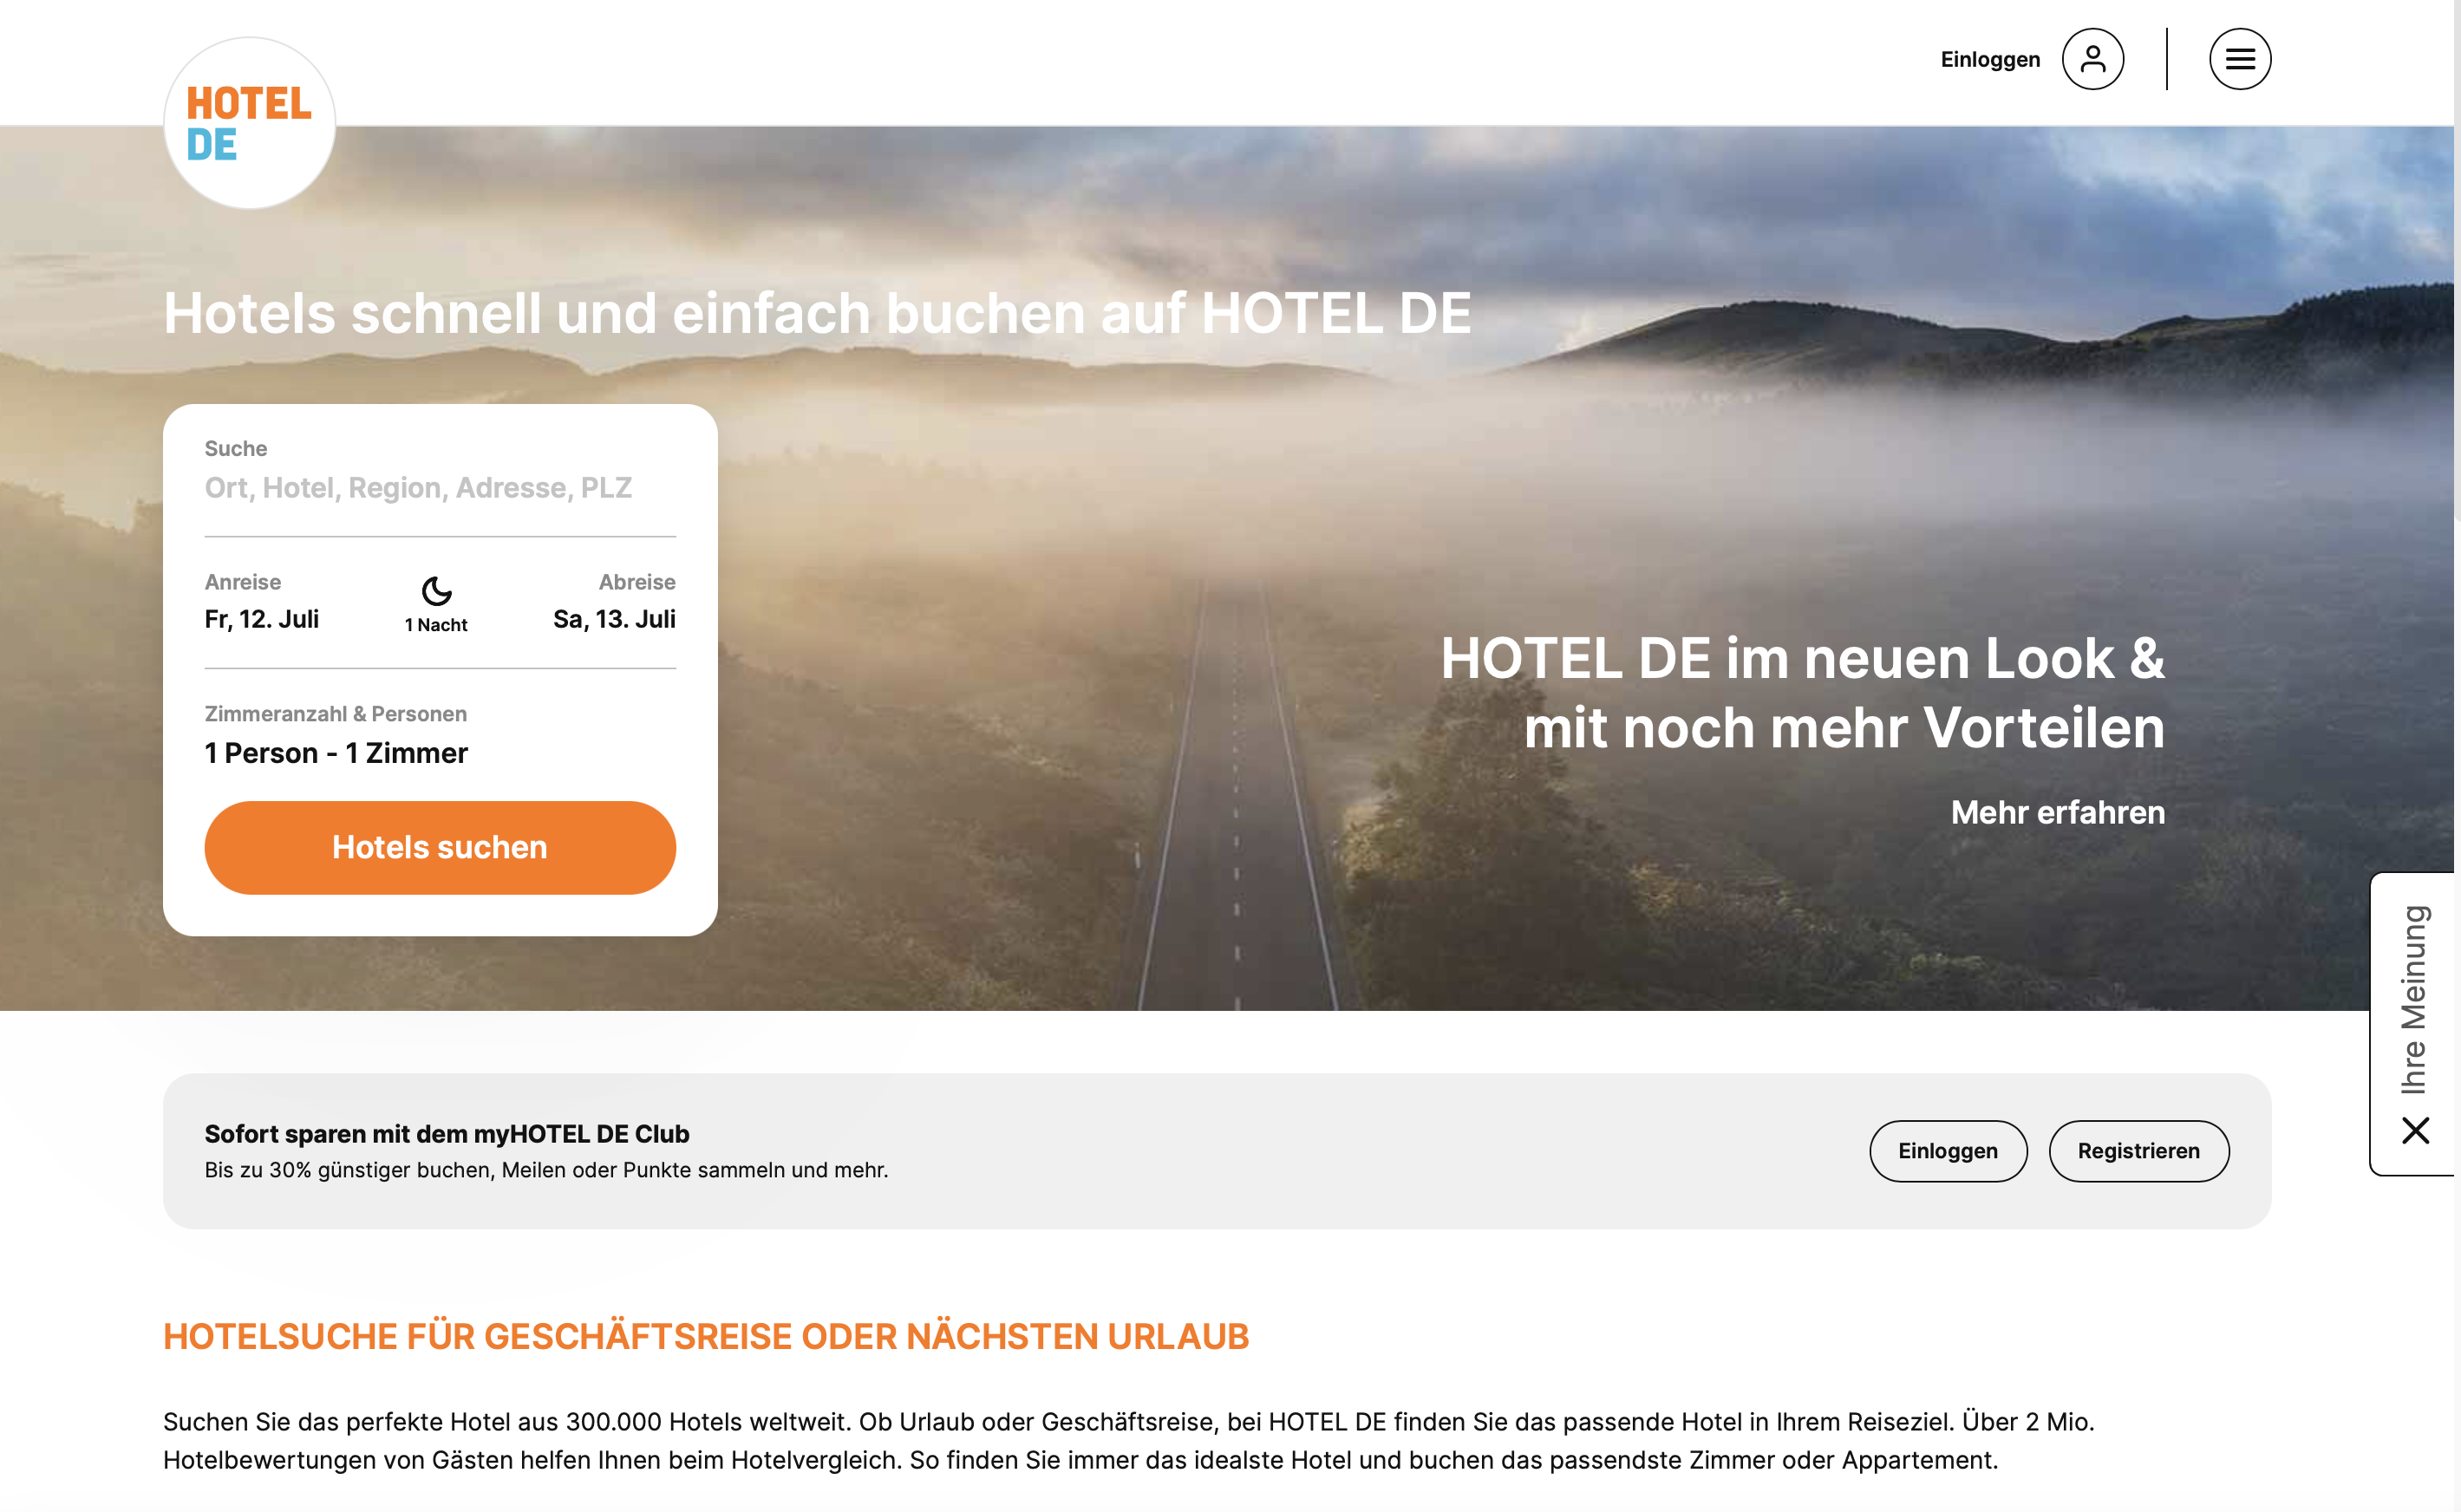 HOTEL DE – Perfekte Hotels für jede Reise